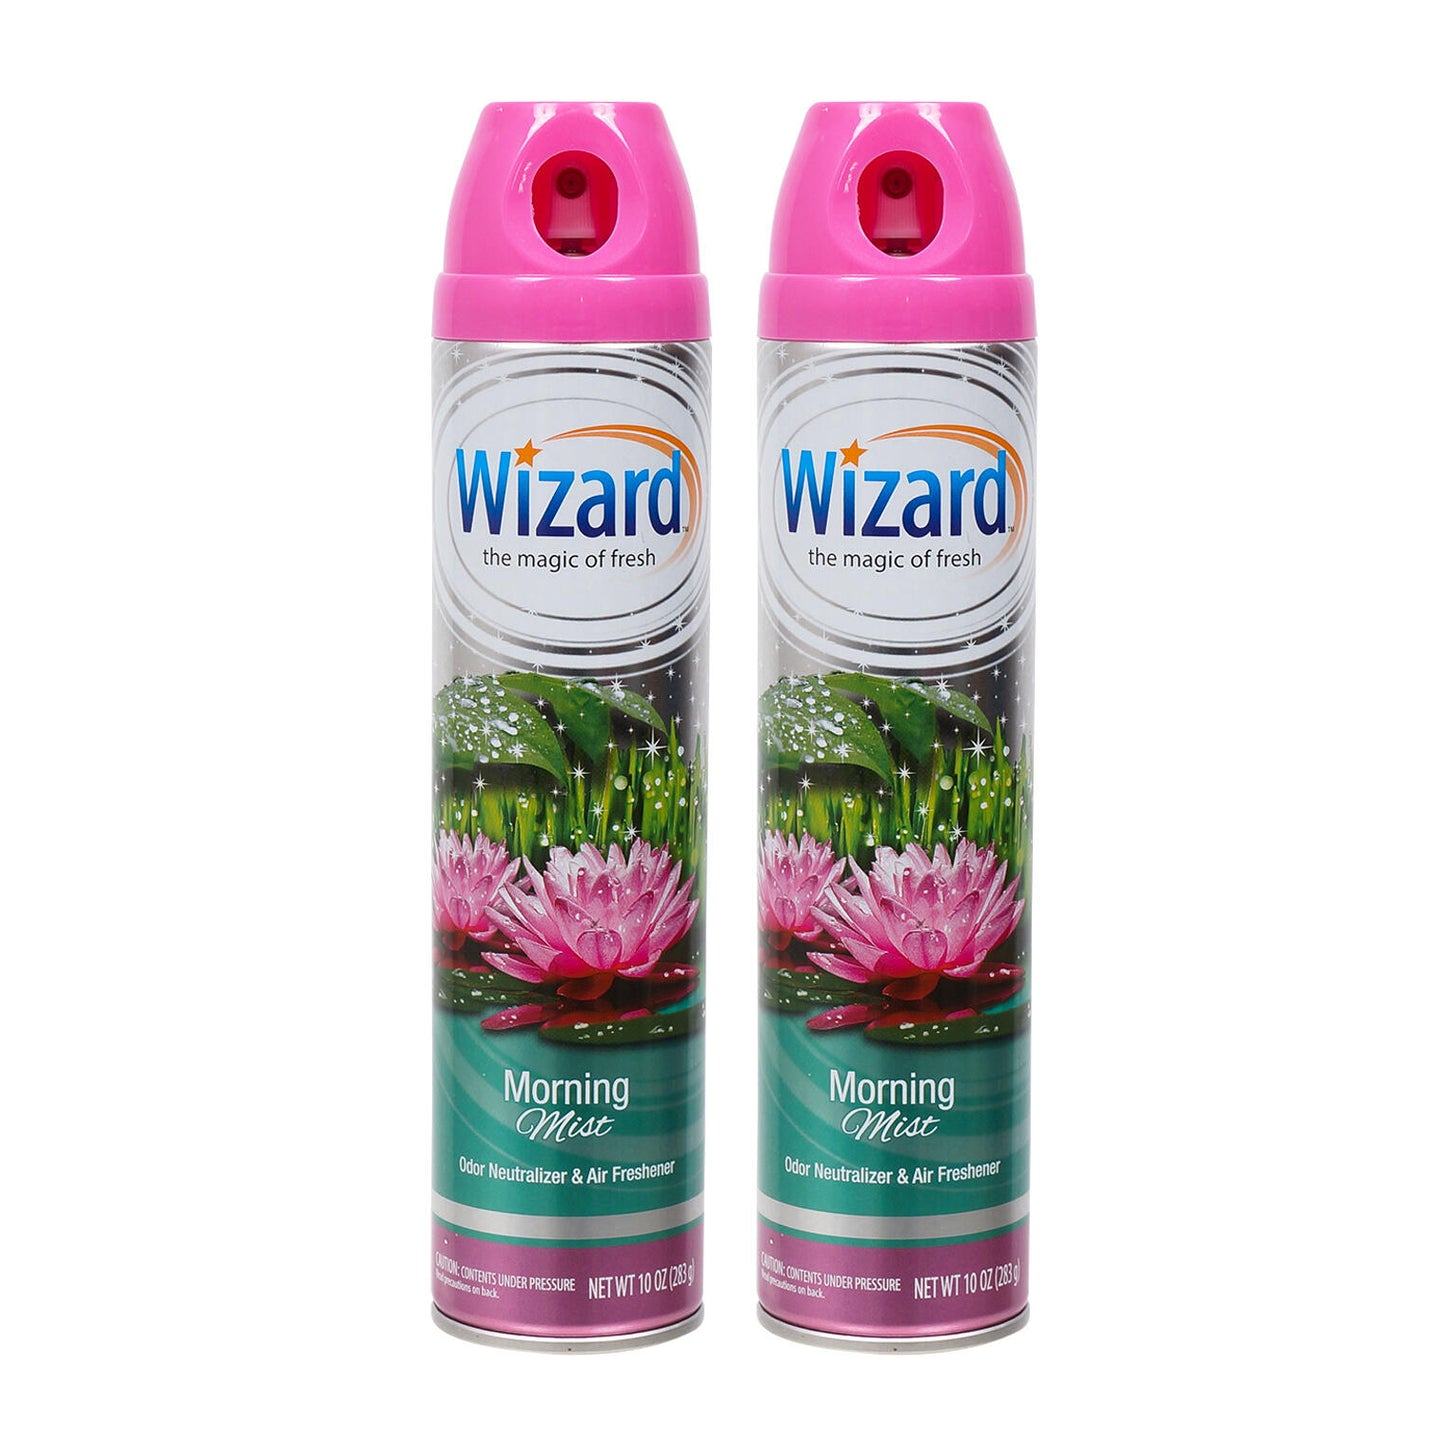 Wizard Morning Mist Air Freshener 10 oz "2-PACK"